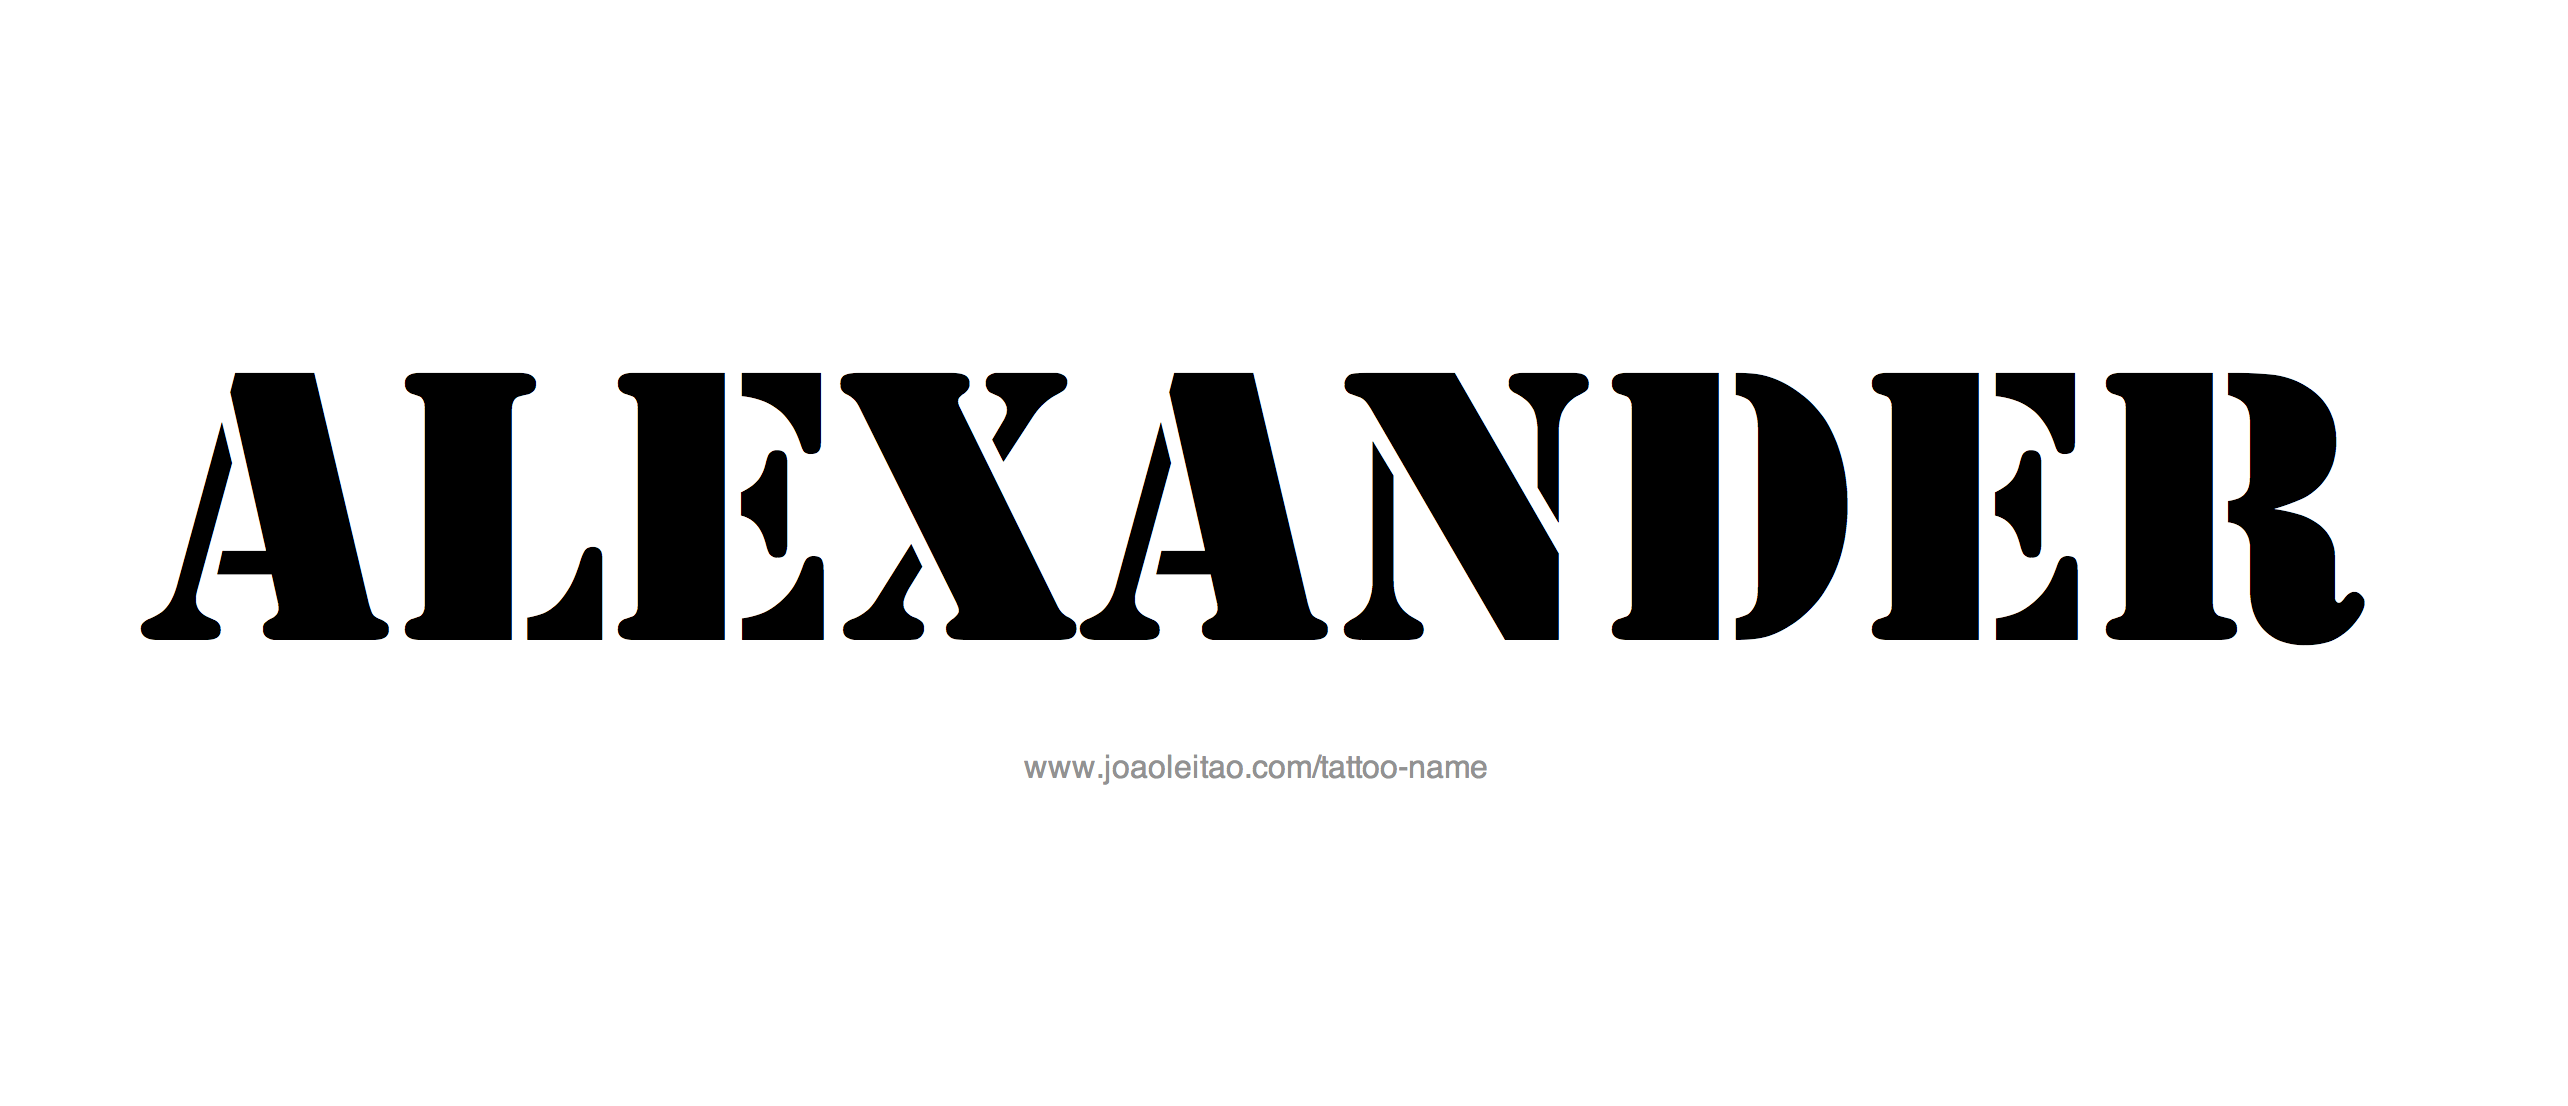 Александр красивым шрифтом